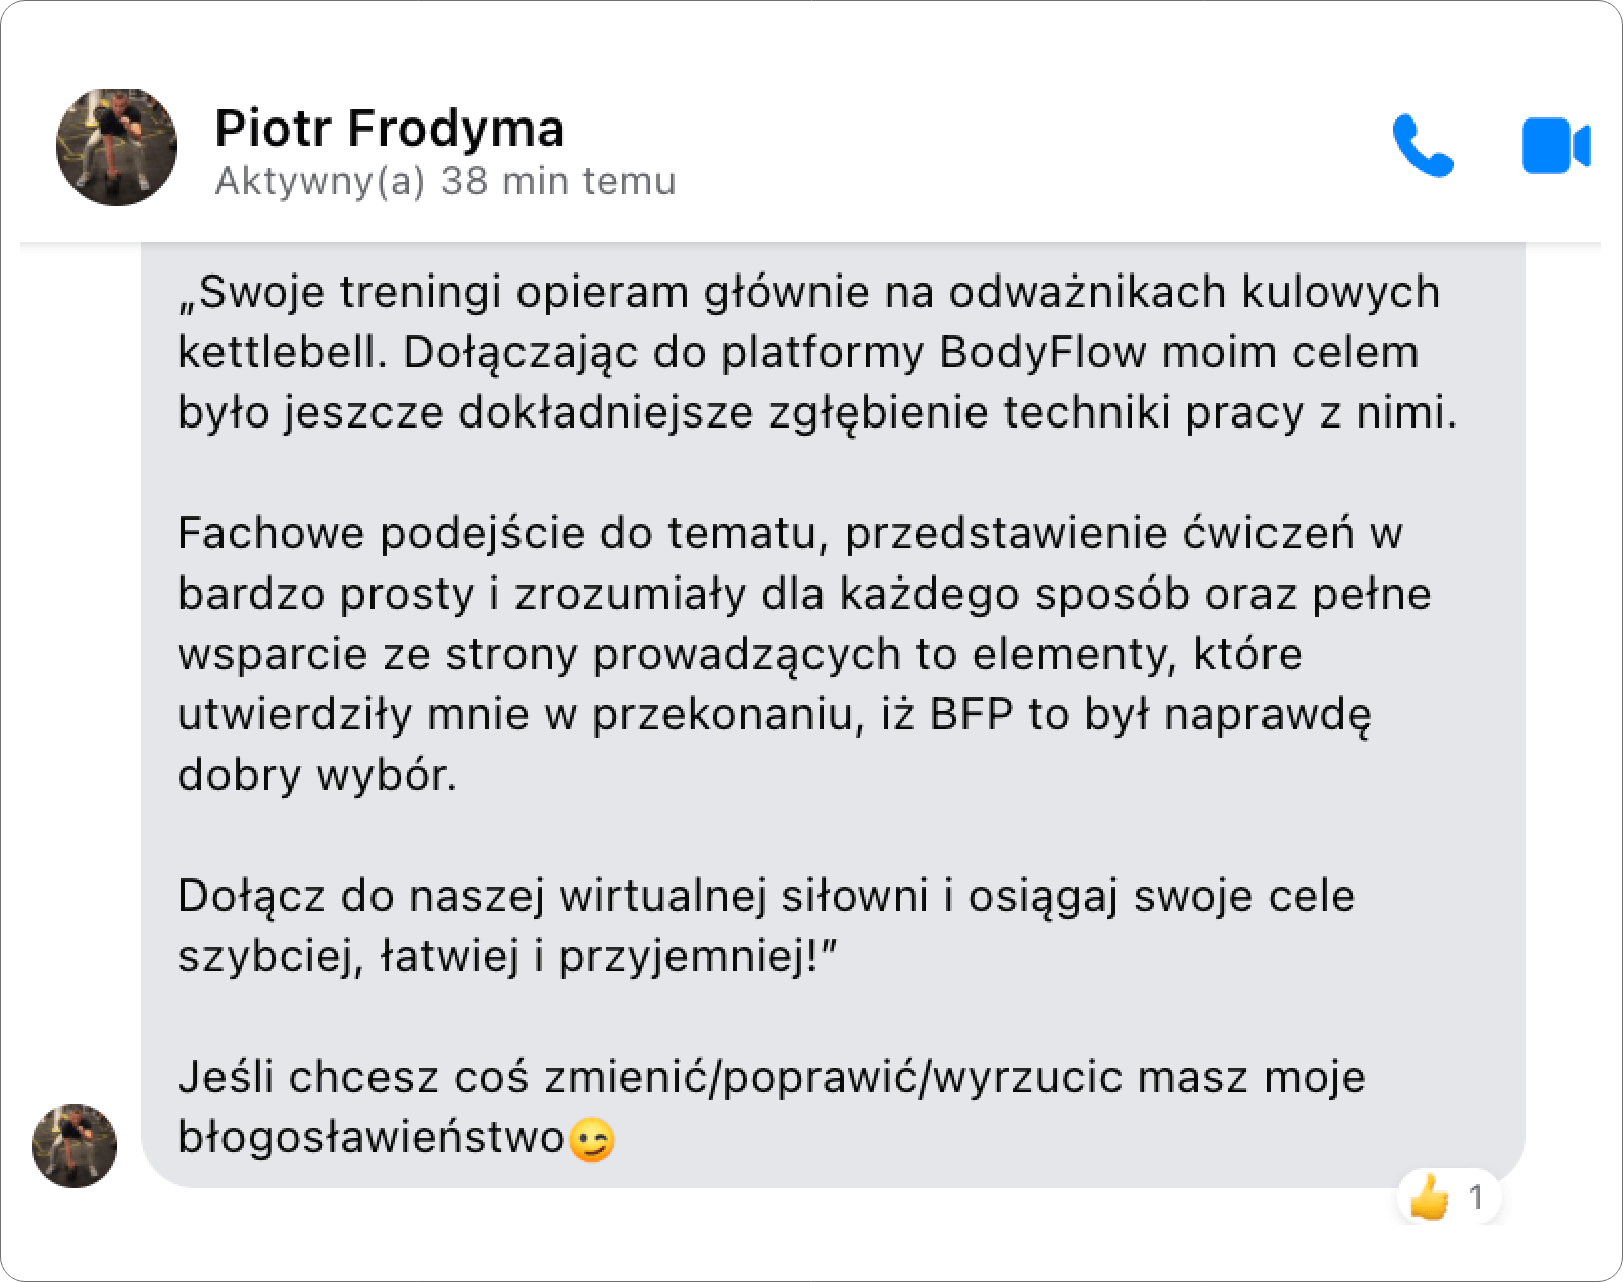 Piotr Frodyma